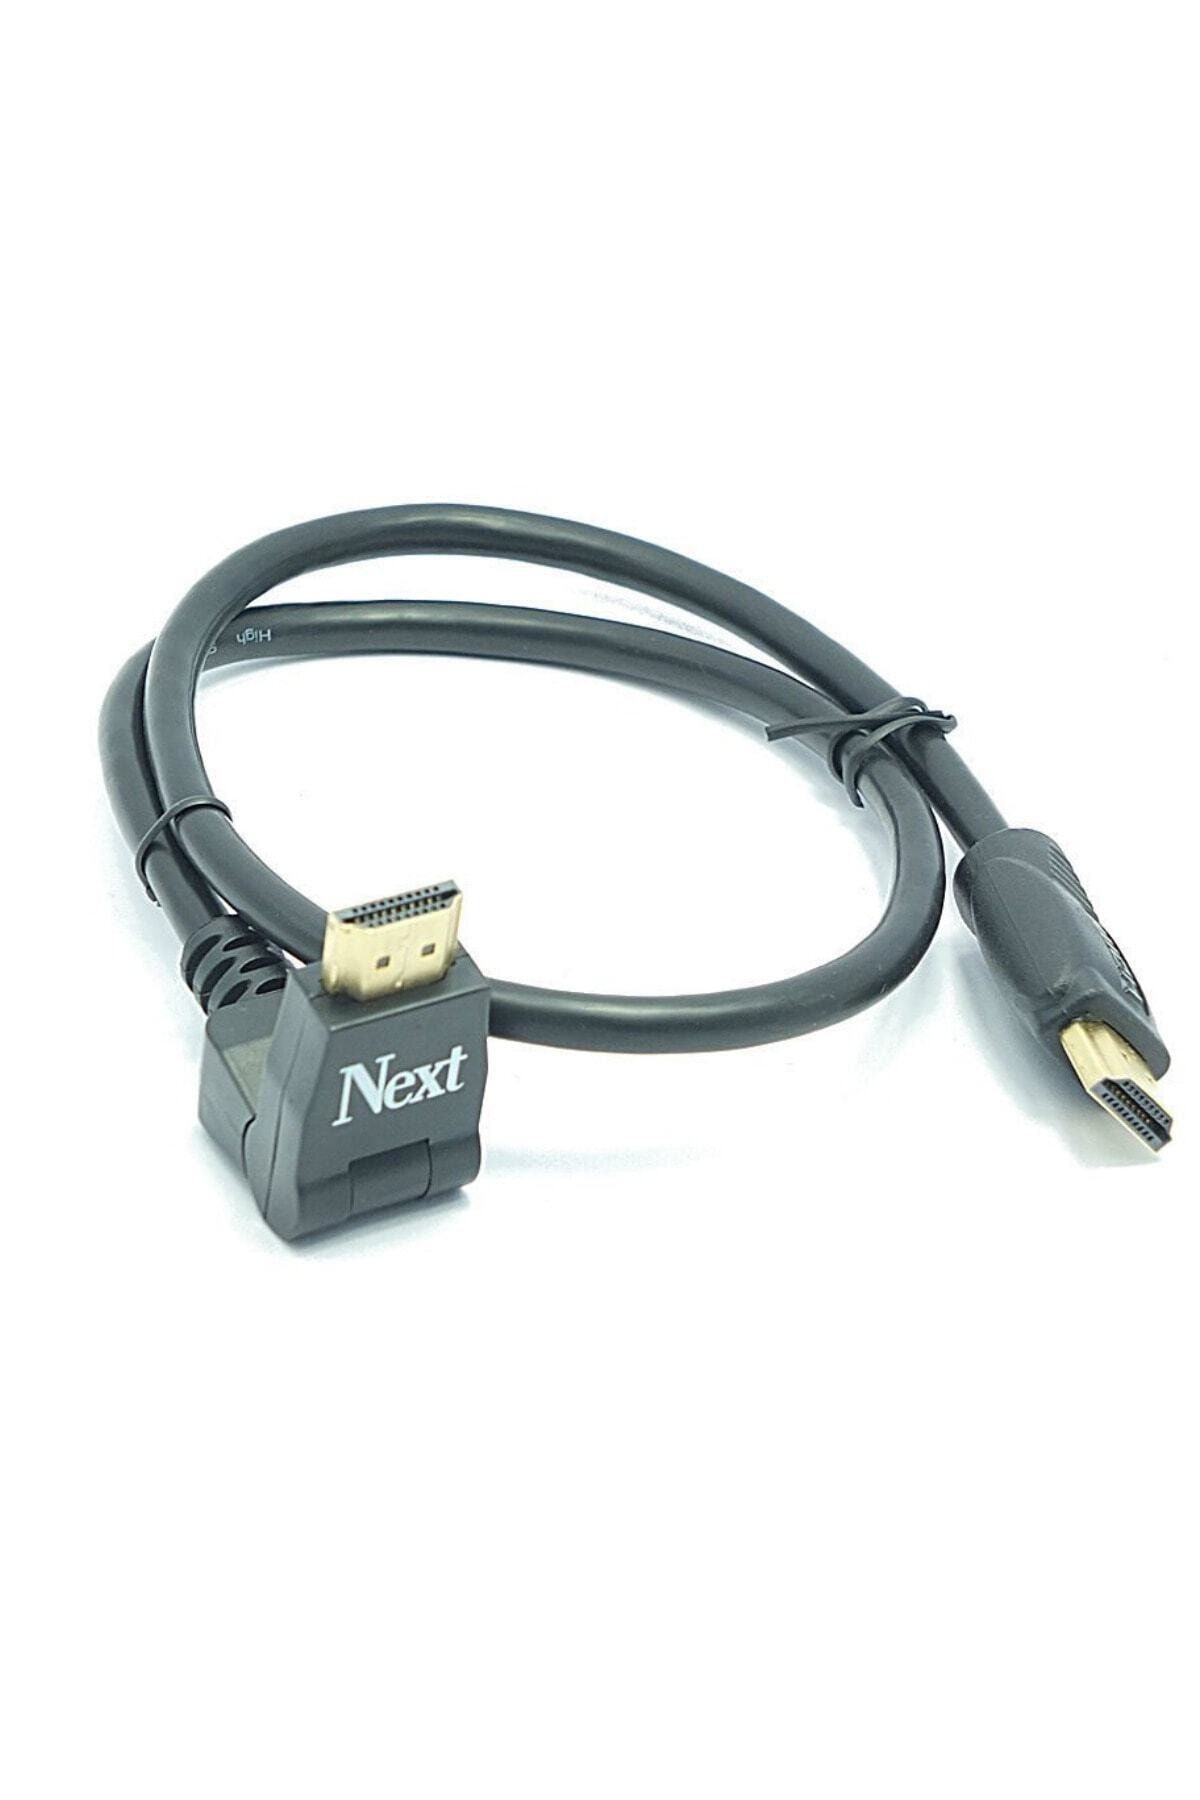 Next Nextstar Next 60cm Yüksek Hızlı 180 Derece Dönebilir Hdmı Kablo